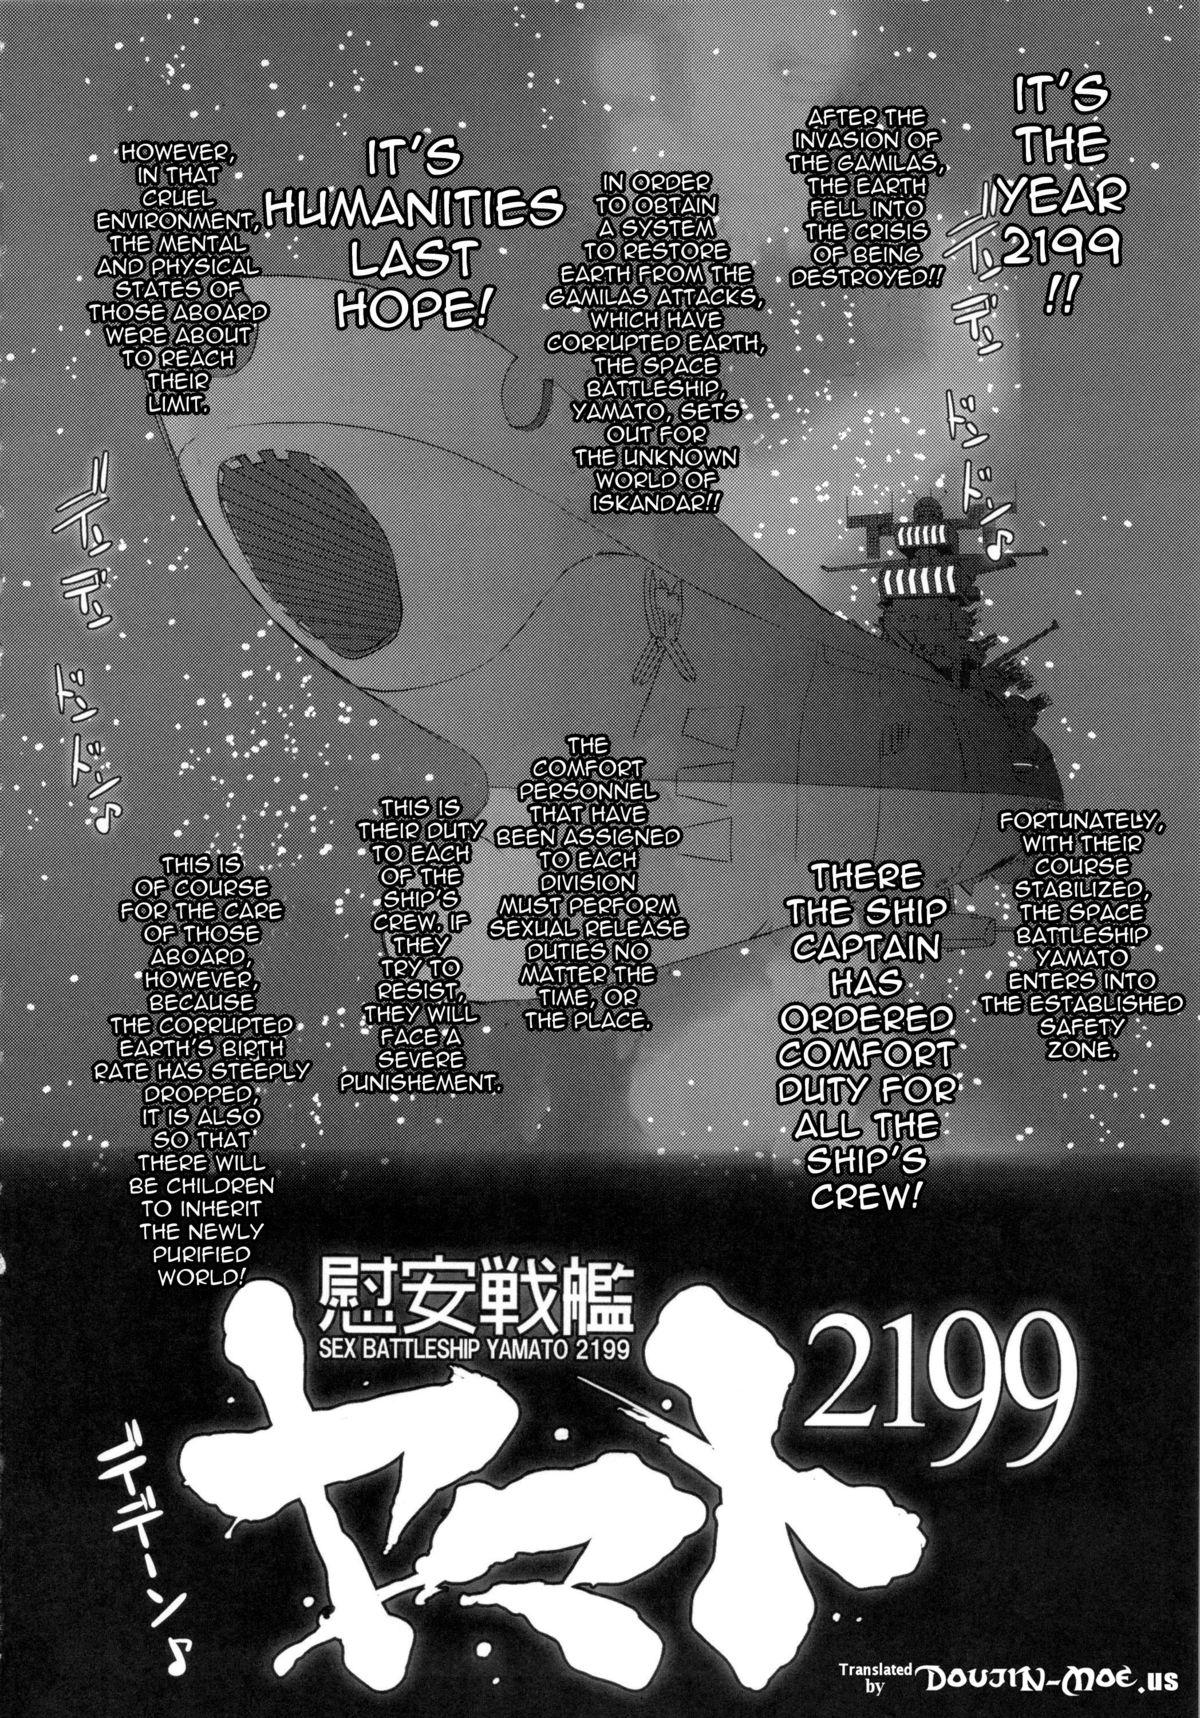 Off Ian Senkan Yamato 2199-2 | Comfort Battleship Yamato 2199 2 - Space battleship yamato Chile - Page 3